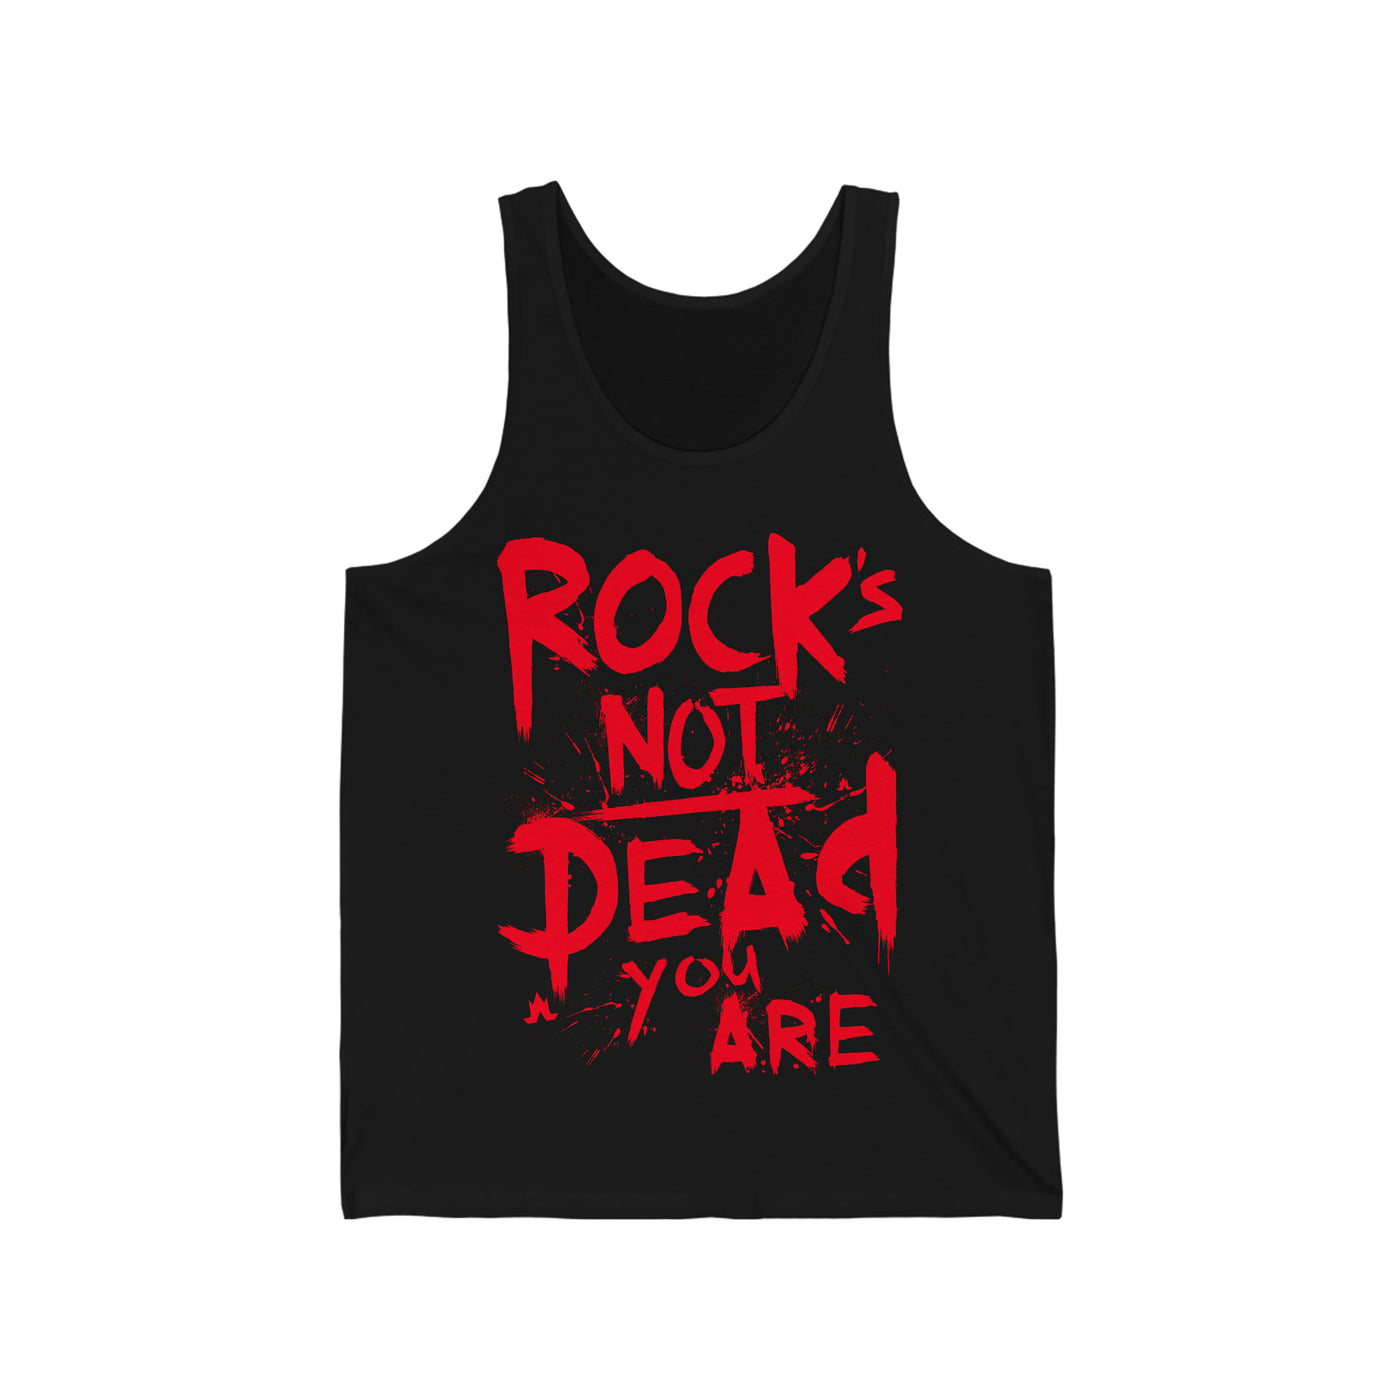 Rock's Not Dead Tank Top (Red Print) - Men's